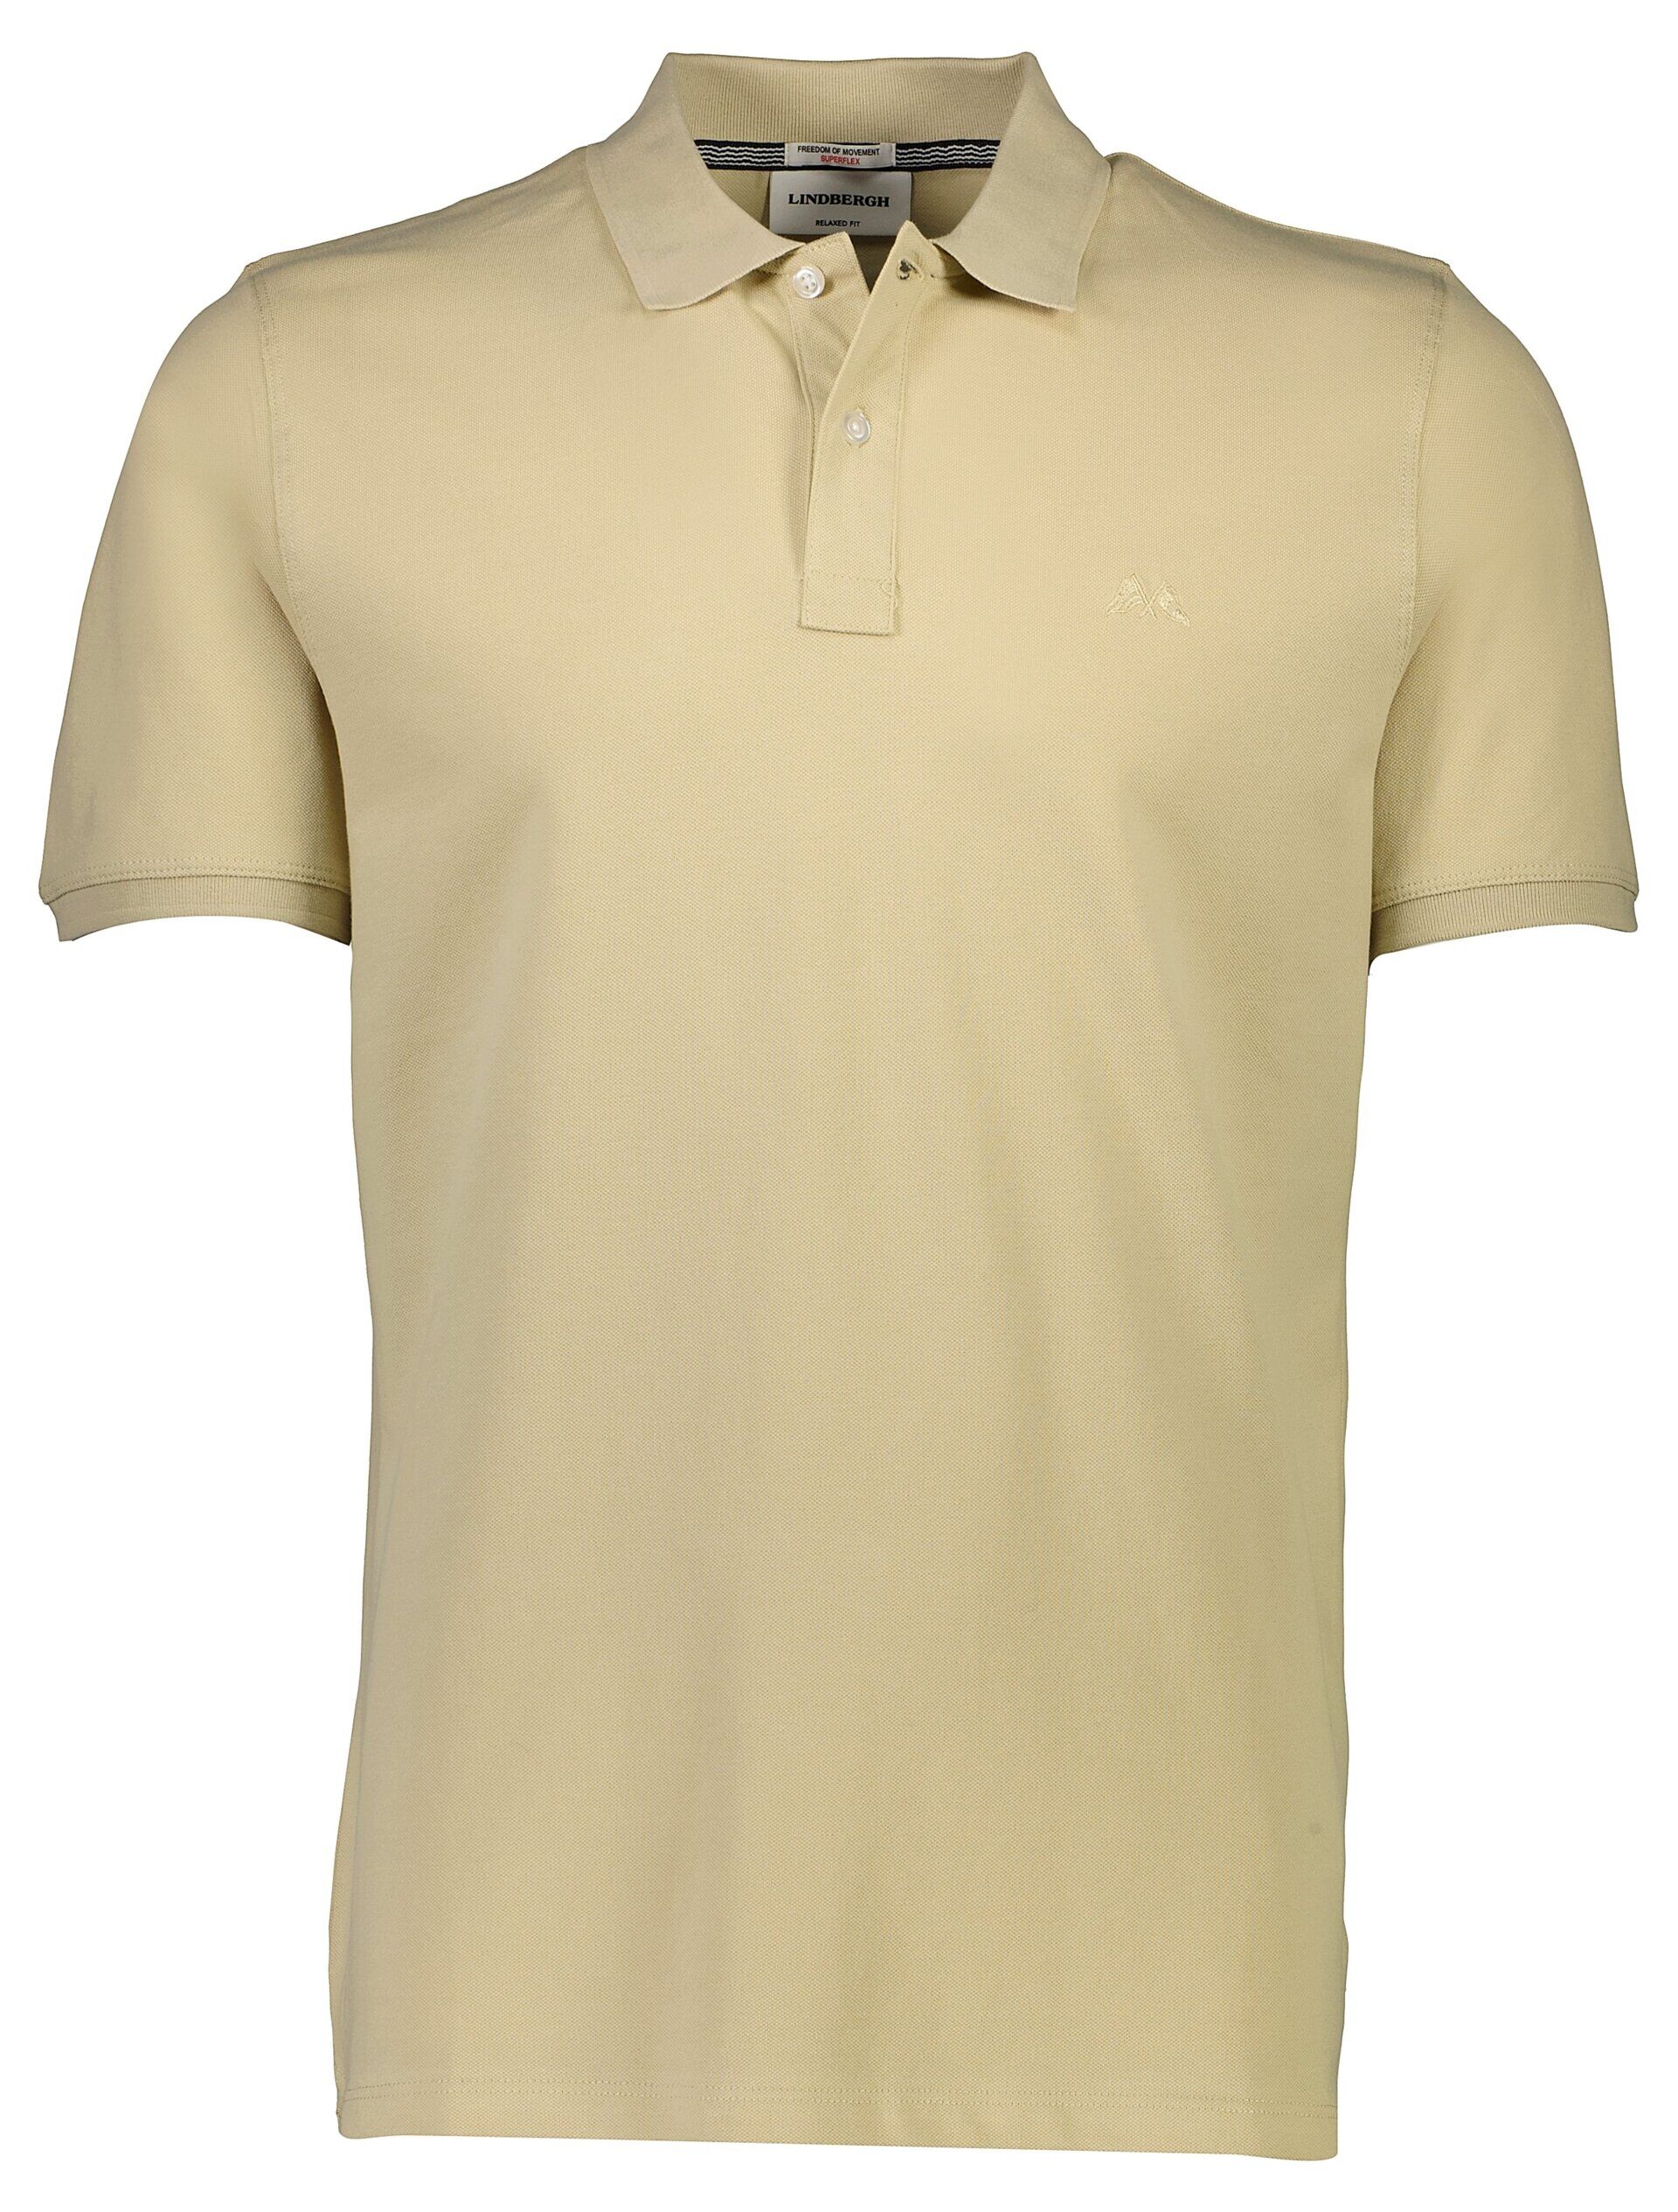 Polo shirt Polo shirt Sand 30-404016